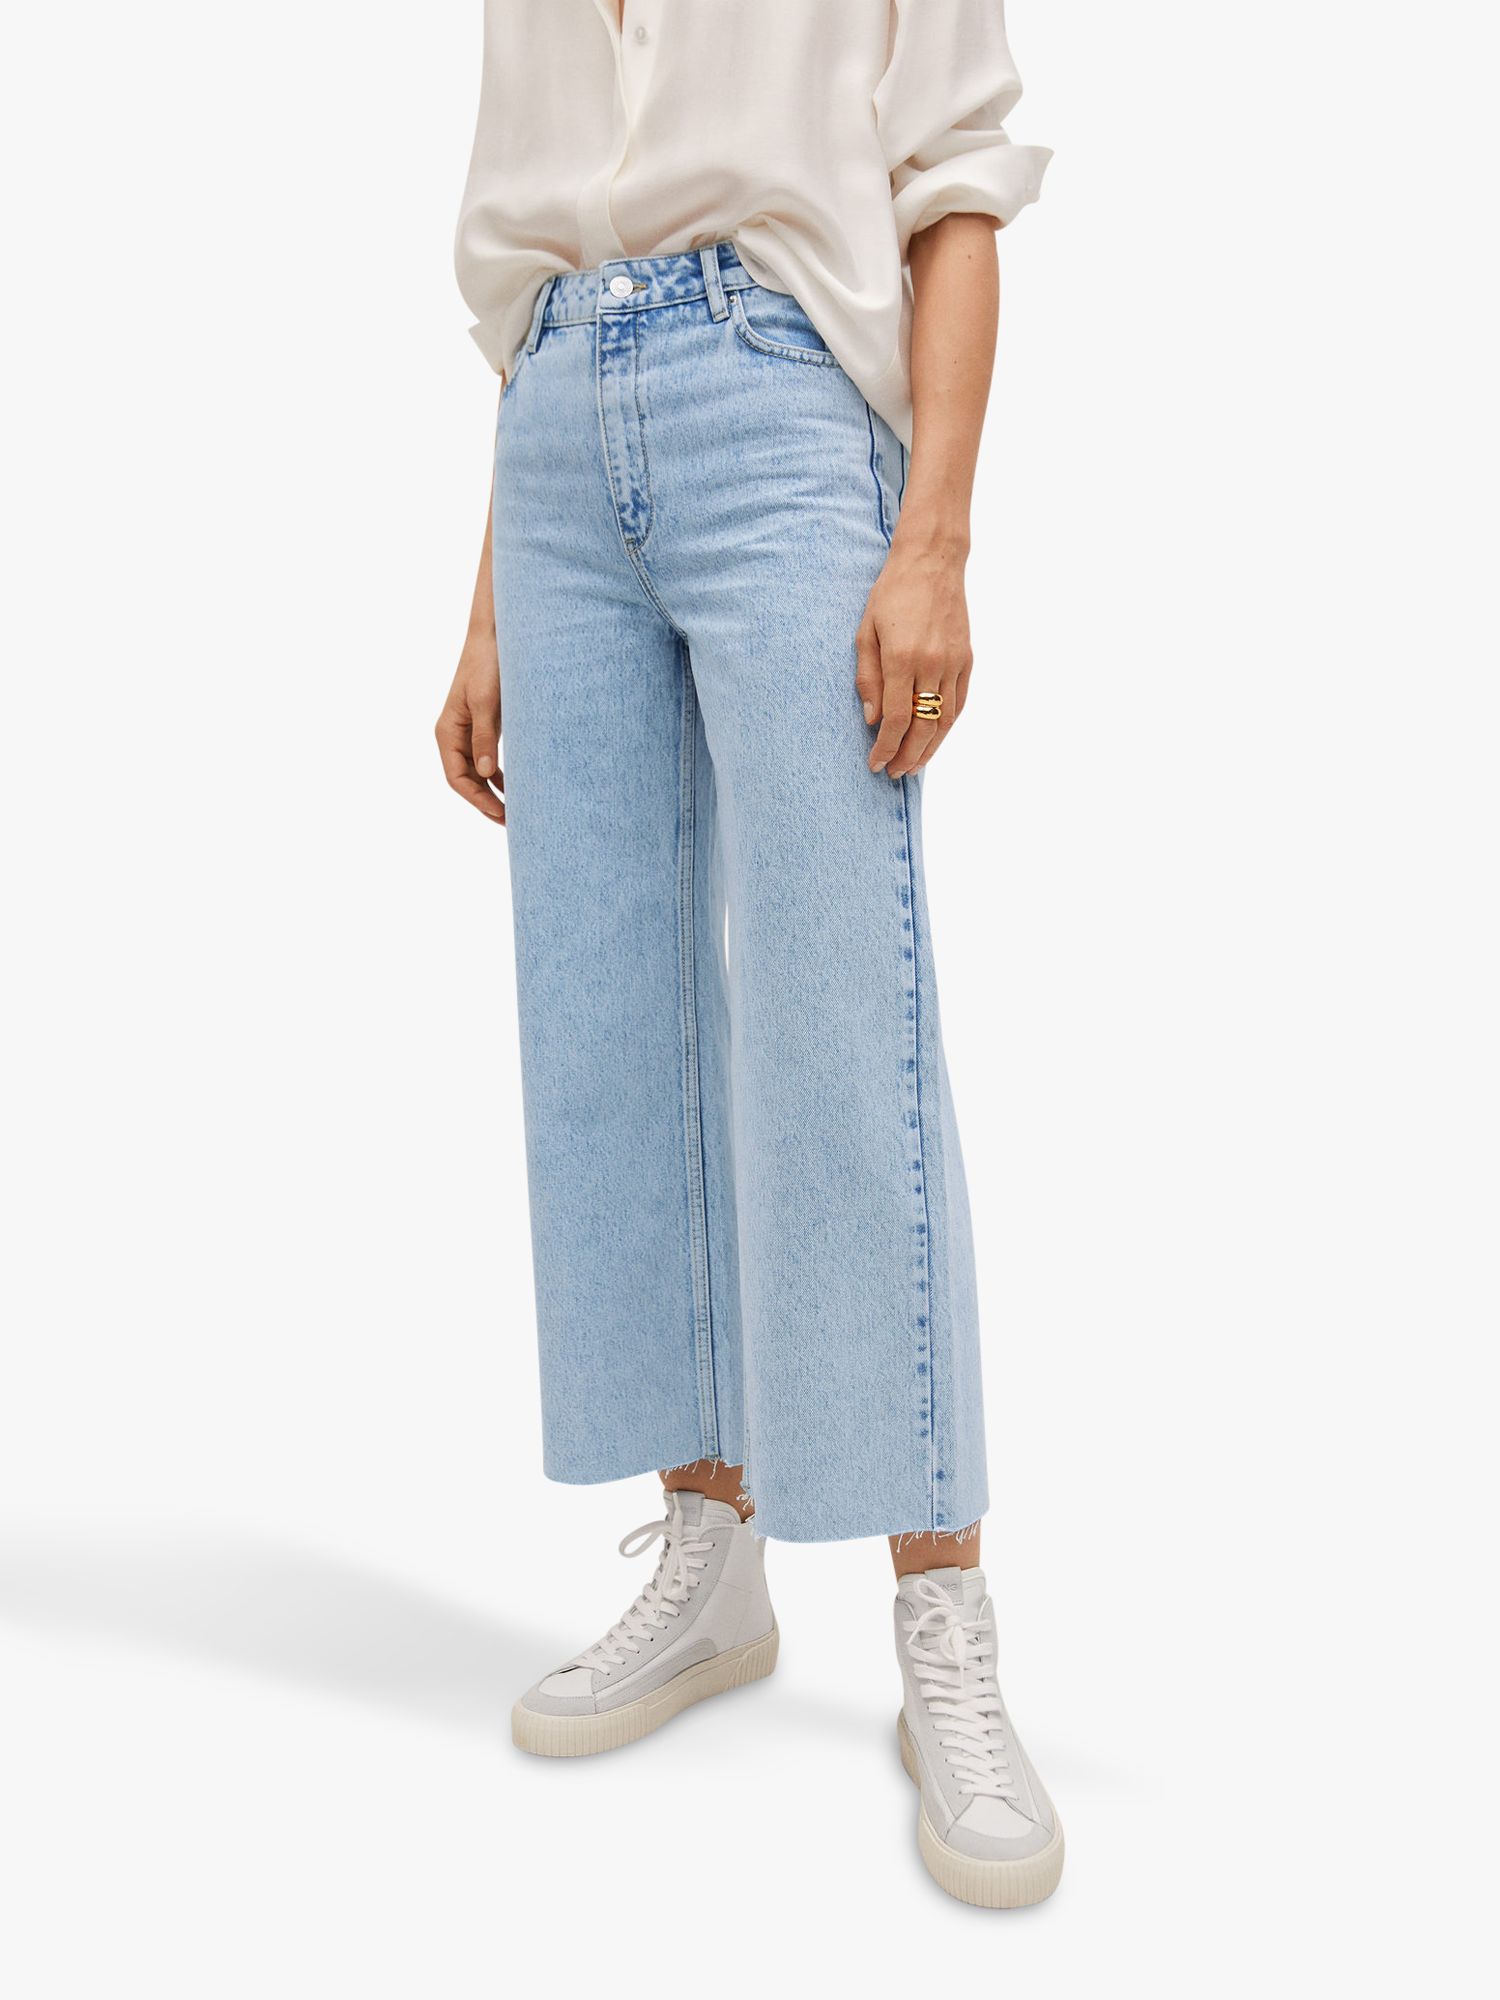 High Waist Culotte Jeans